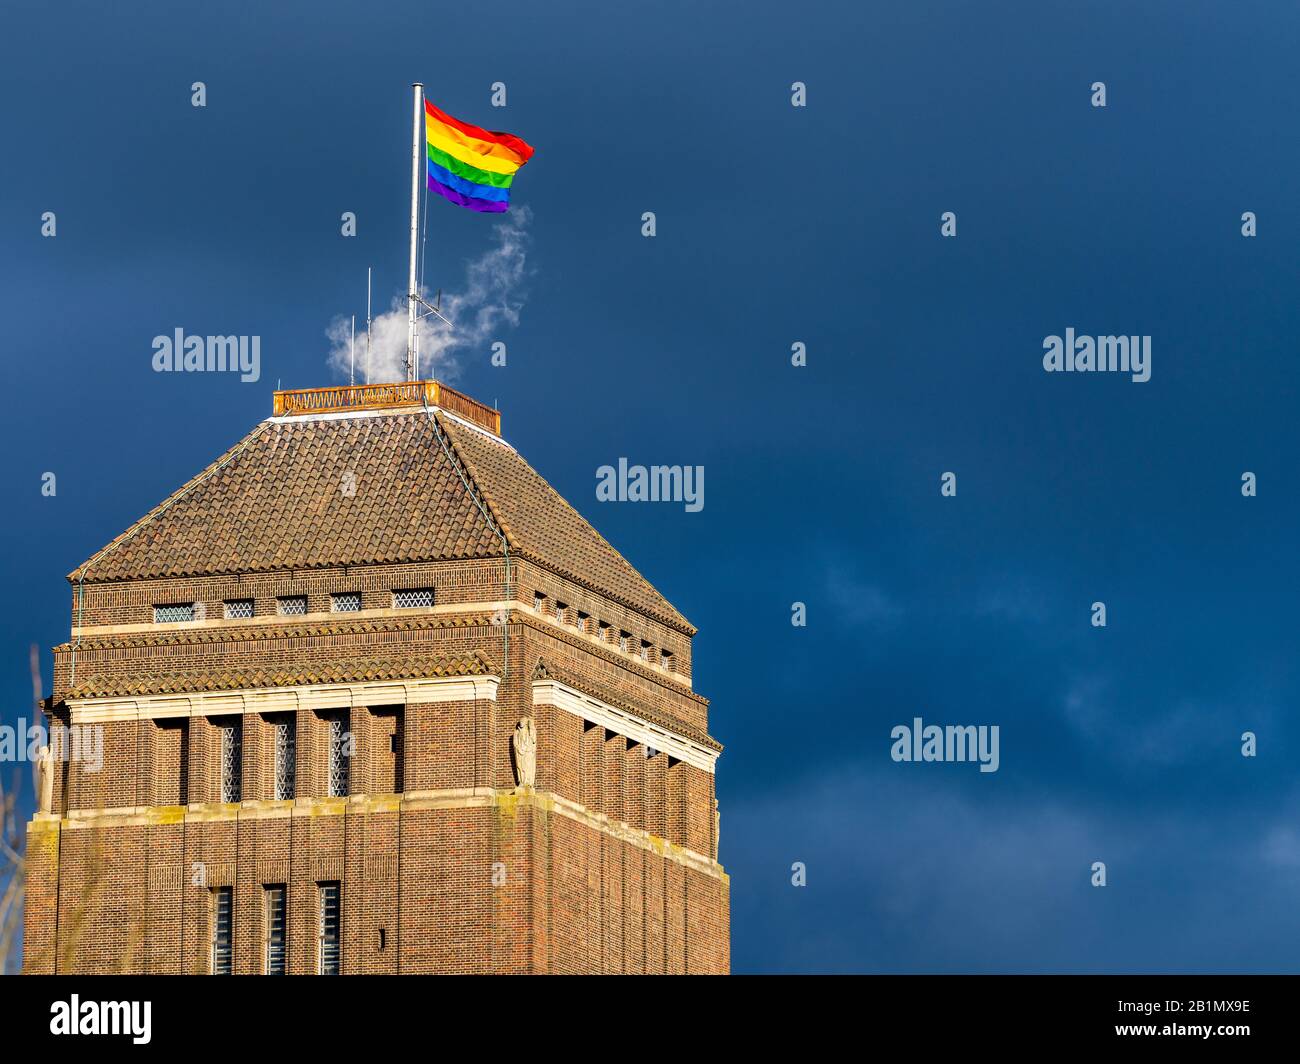 Le drapeau LGBT+ survole la bibliothèque de l'Université de Cambridge pendant le mois de l'histoire LGBT+. Le drapeau LGBT survole la bibliothèque de l'Université de Cambridge. Banque D'Images